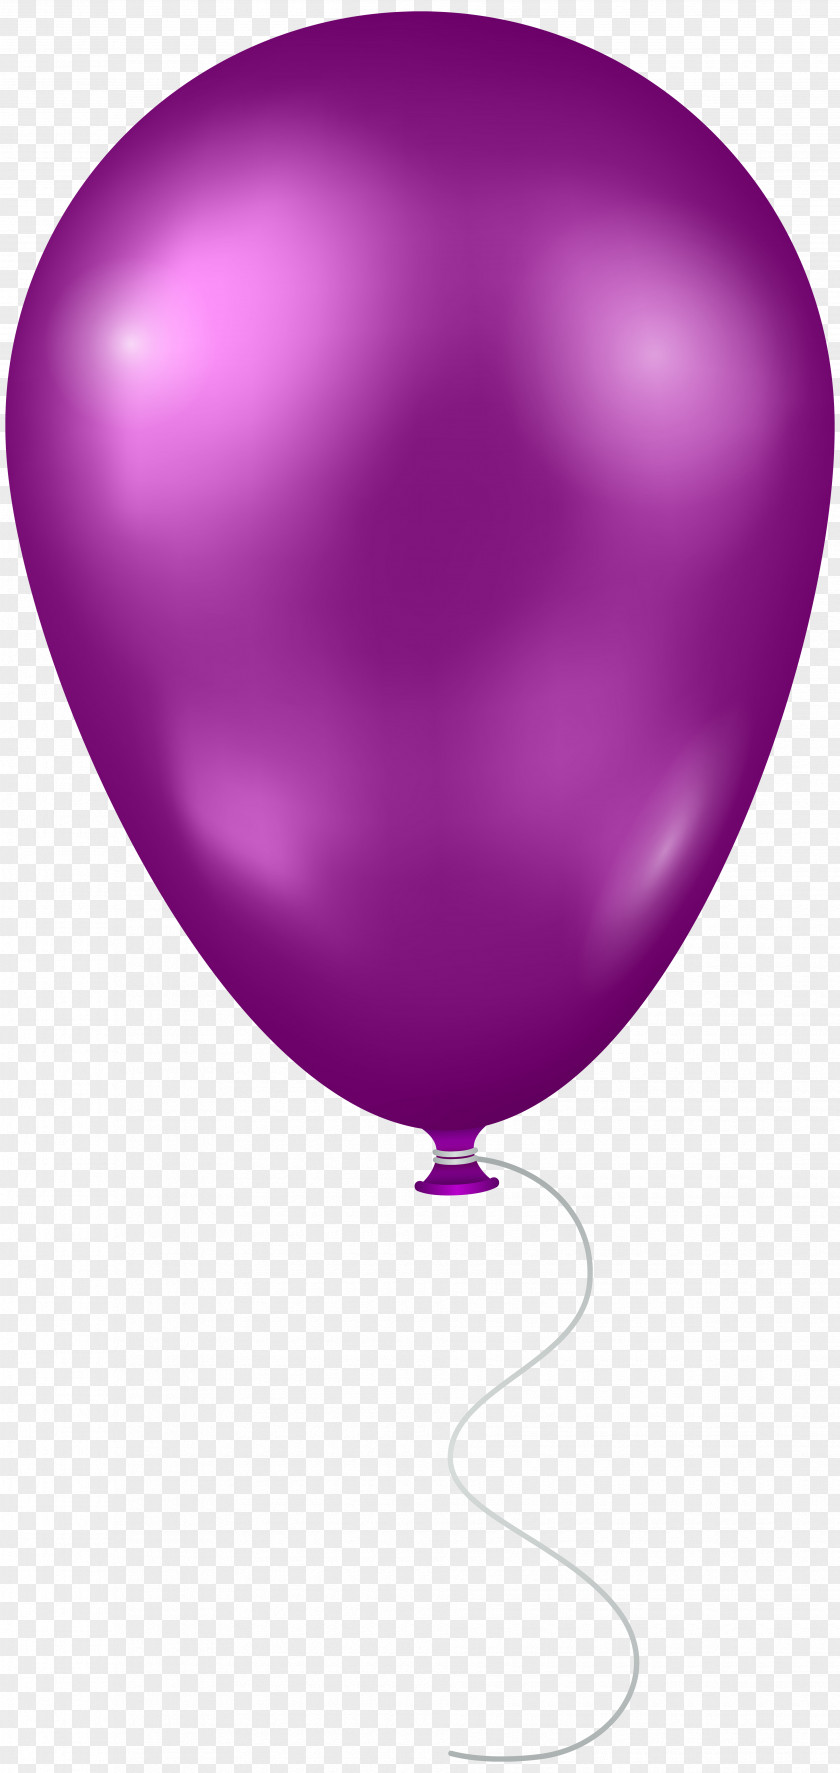 Balloon Blue Clip Art PNG